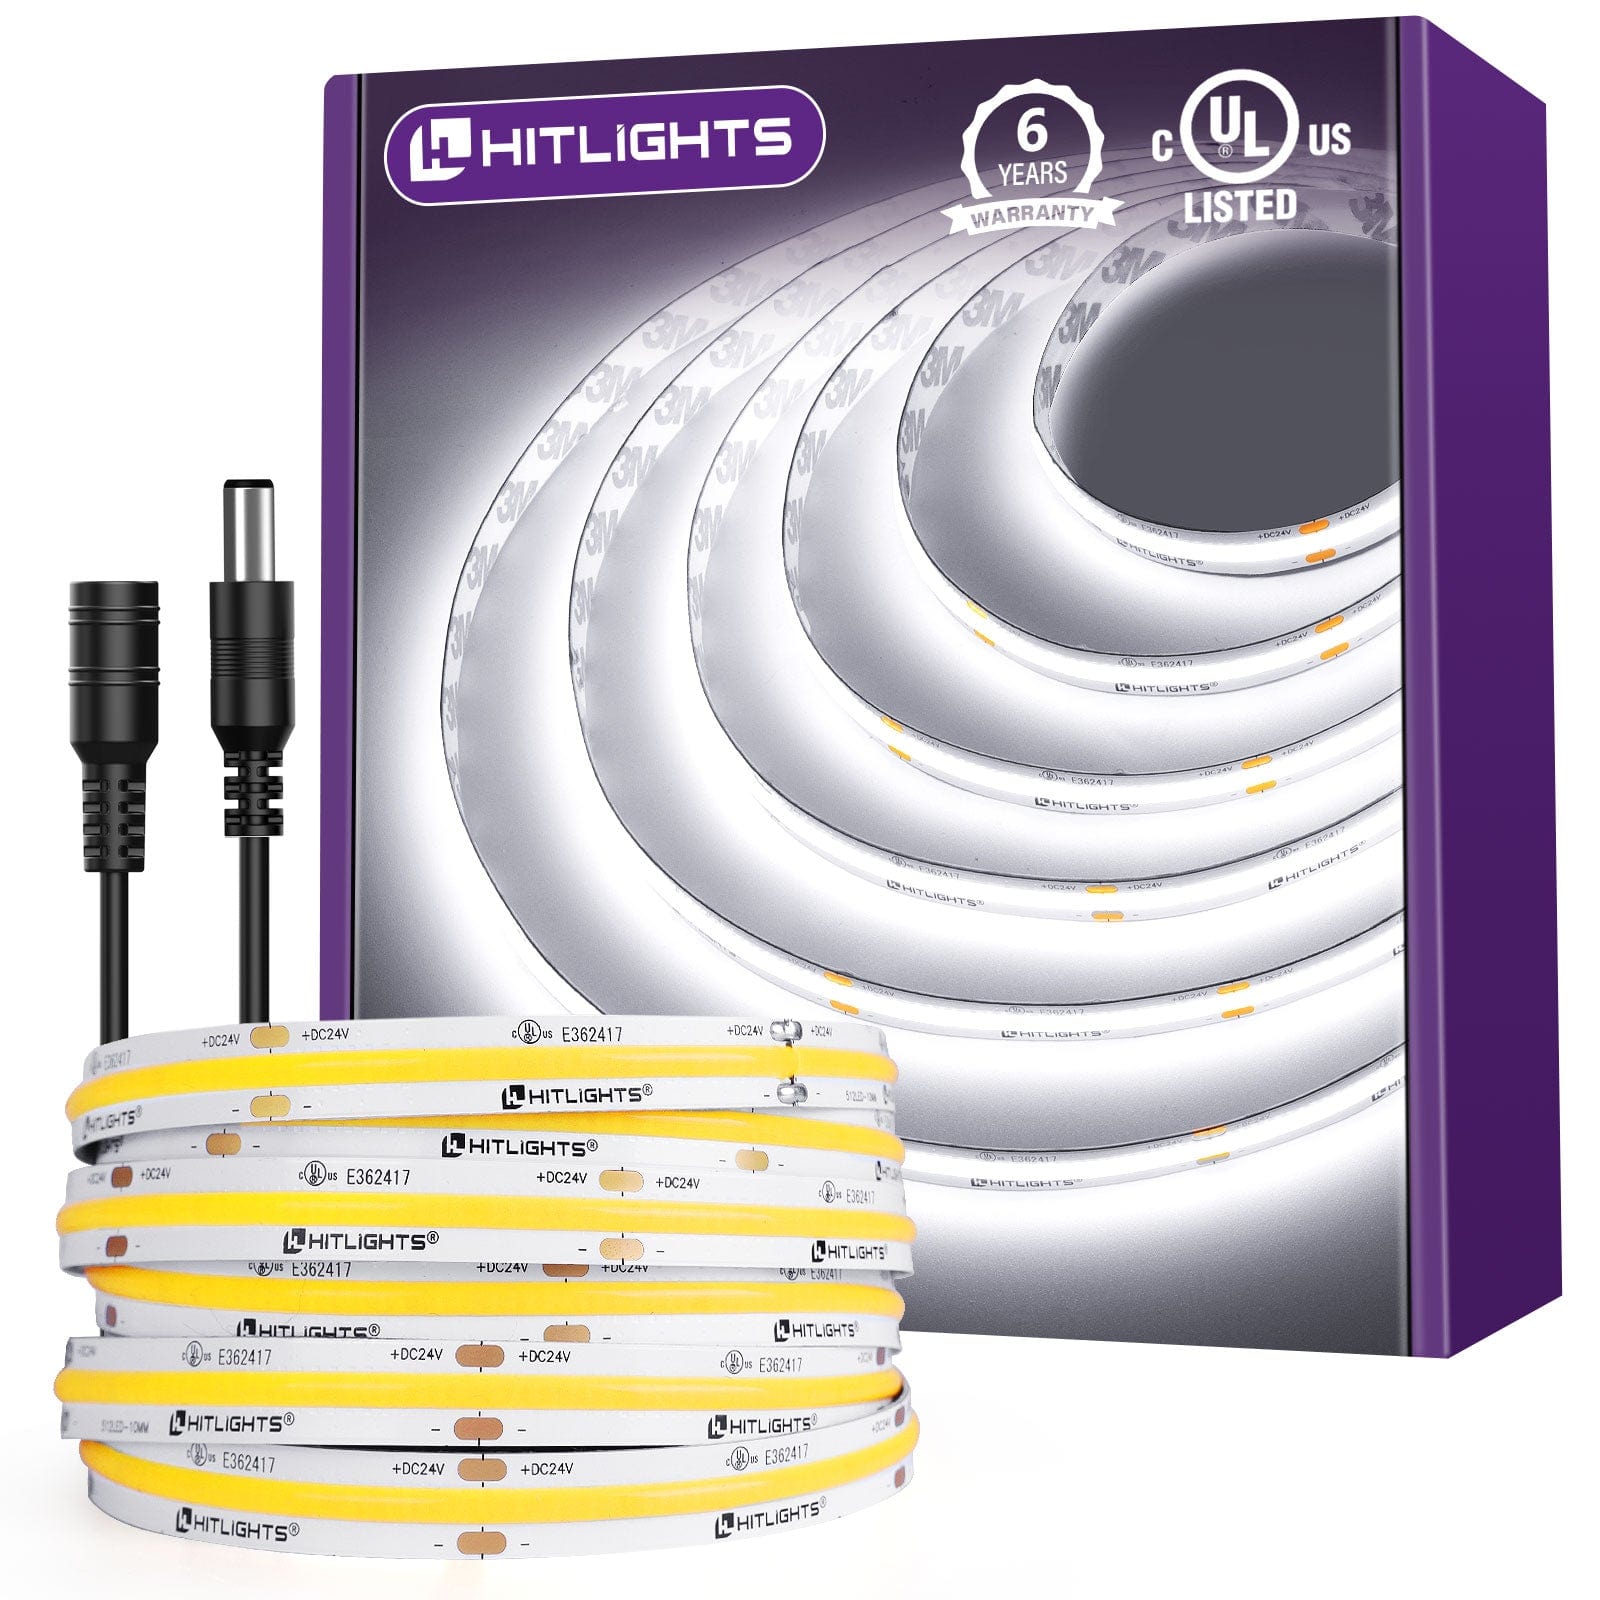 Premium Aluminum LED Channel, LED Strip Supplier